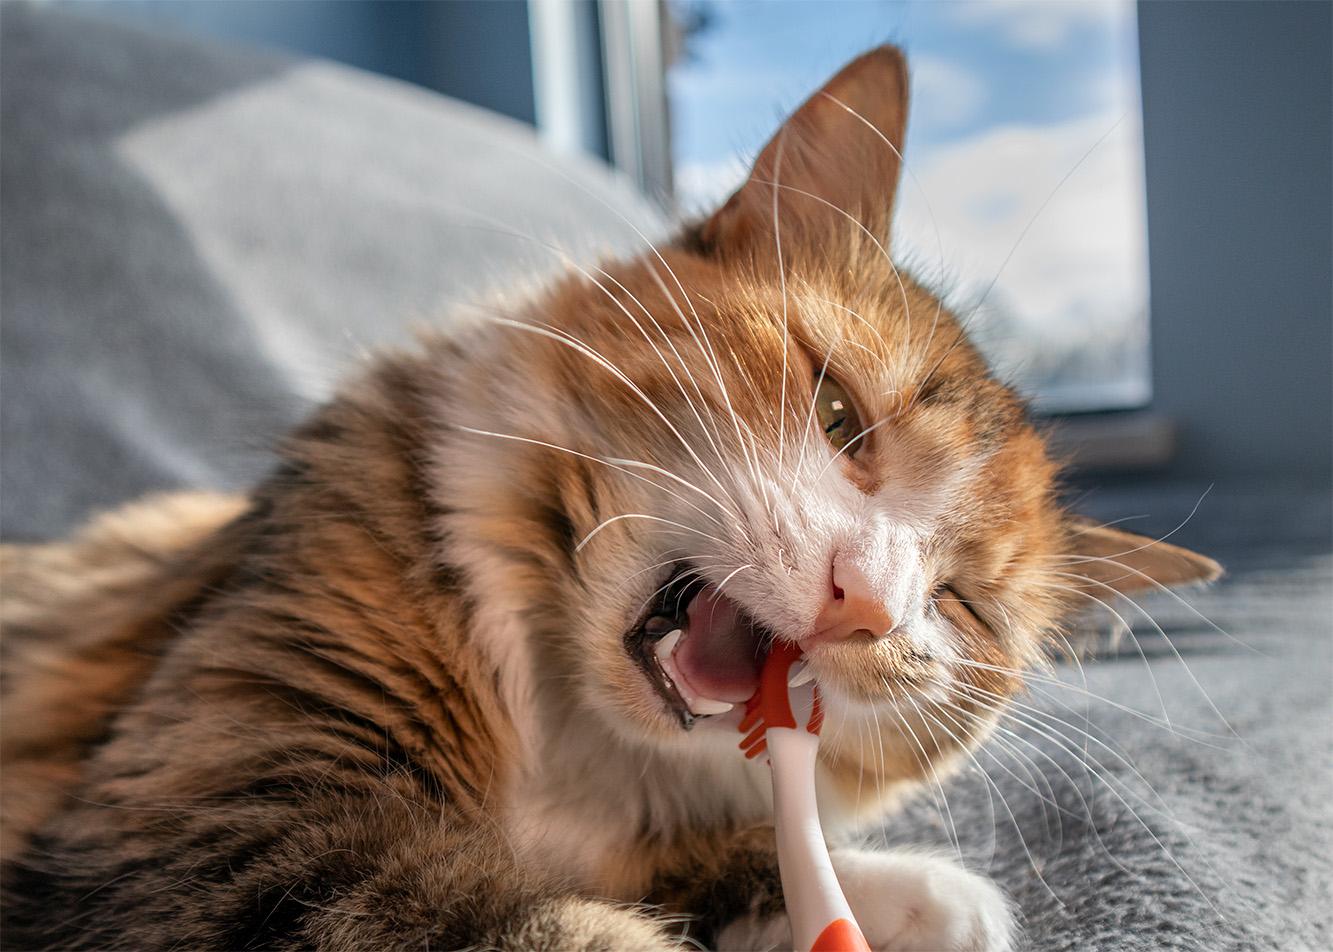 Higiena jamy ustnej - jak dbać o kocie zęby?